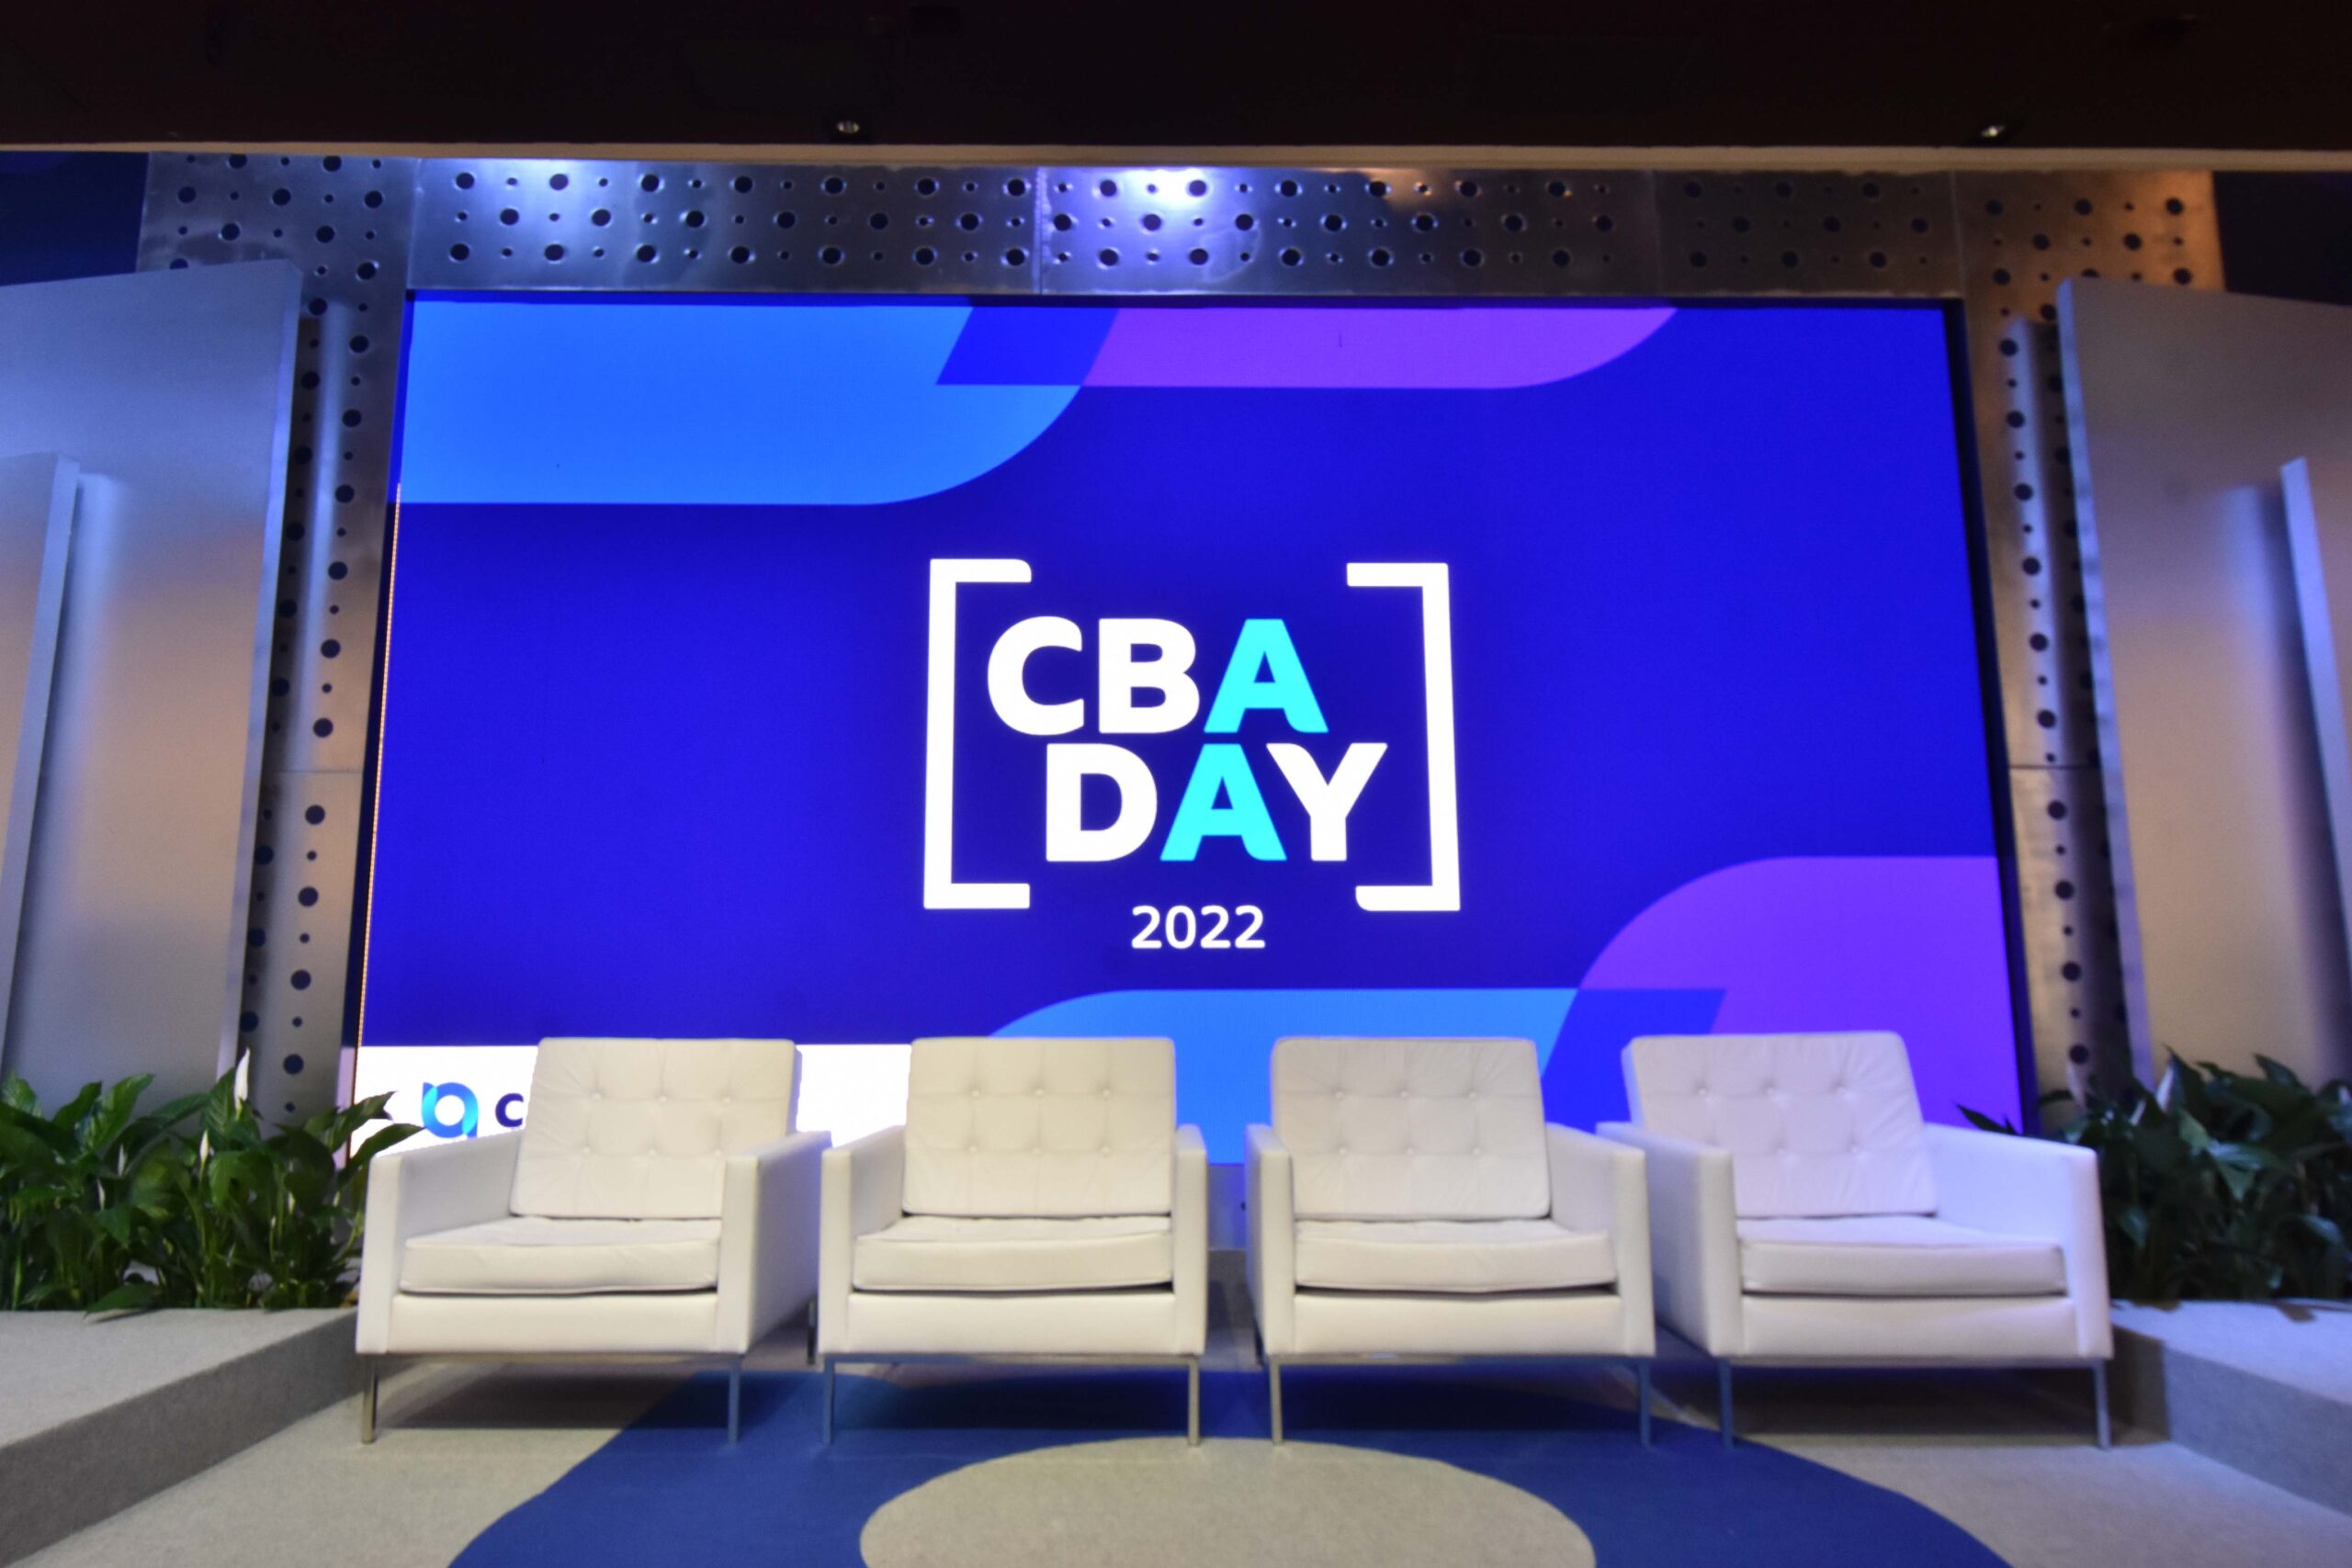 CBA Day 2022